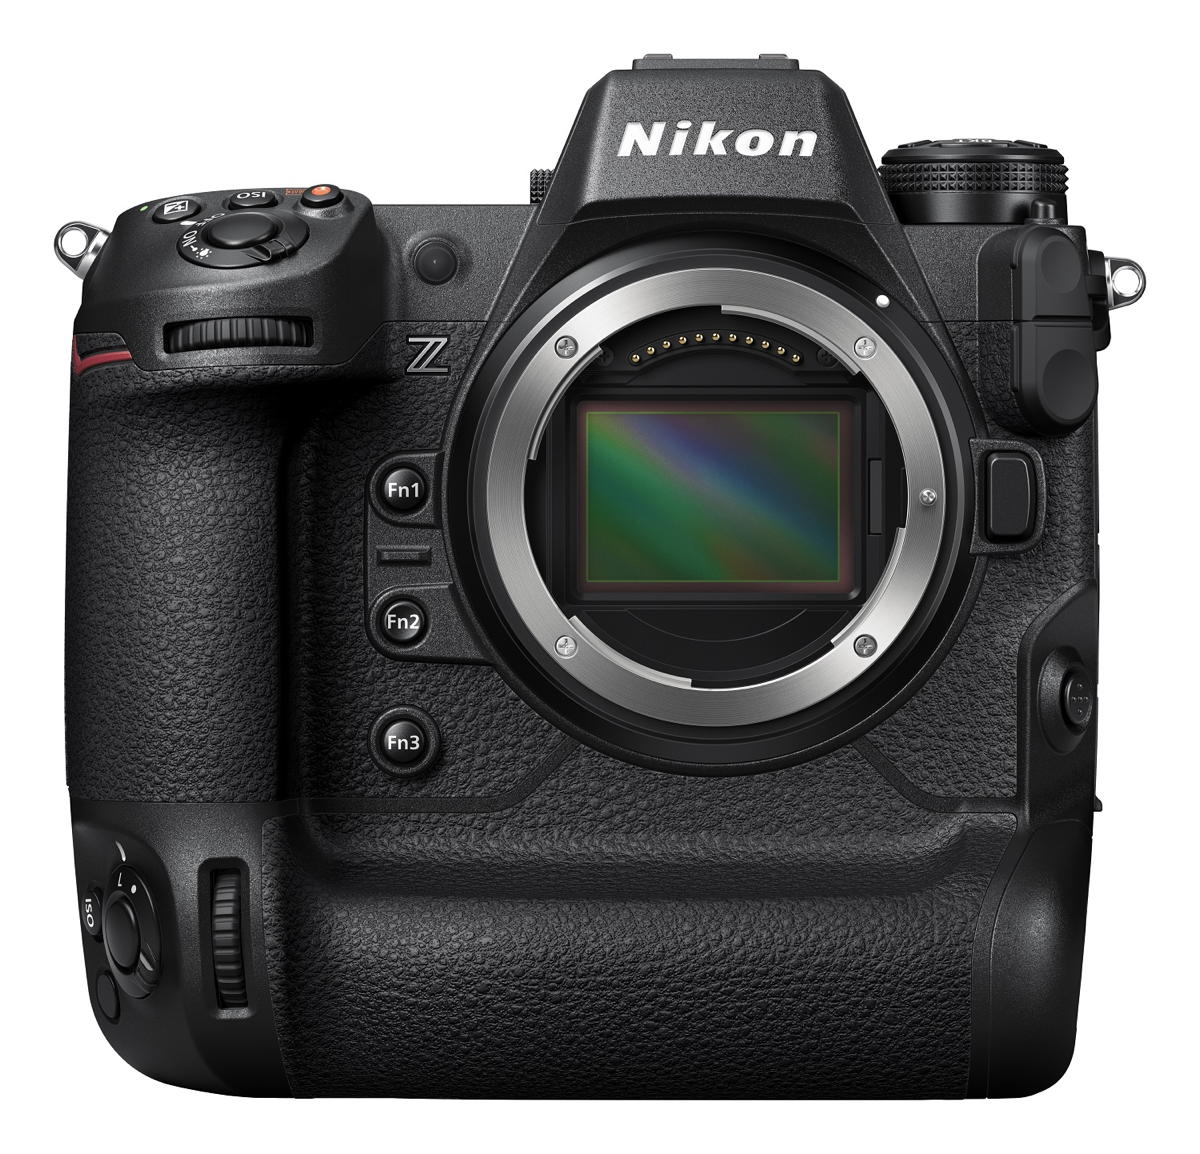 Nikon Z9 Gehäuse, derzeit NUR VORBESTELLUNG möglich! Auslieferstart: Dezember